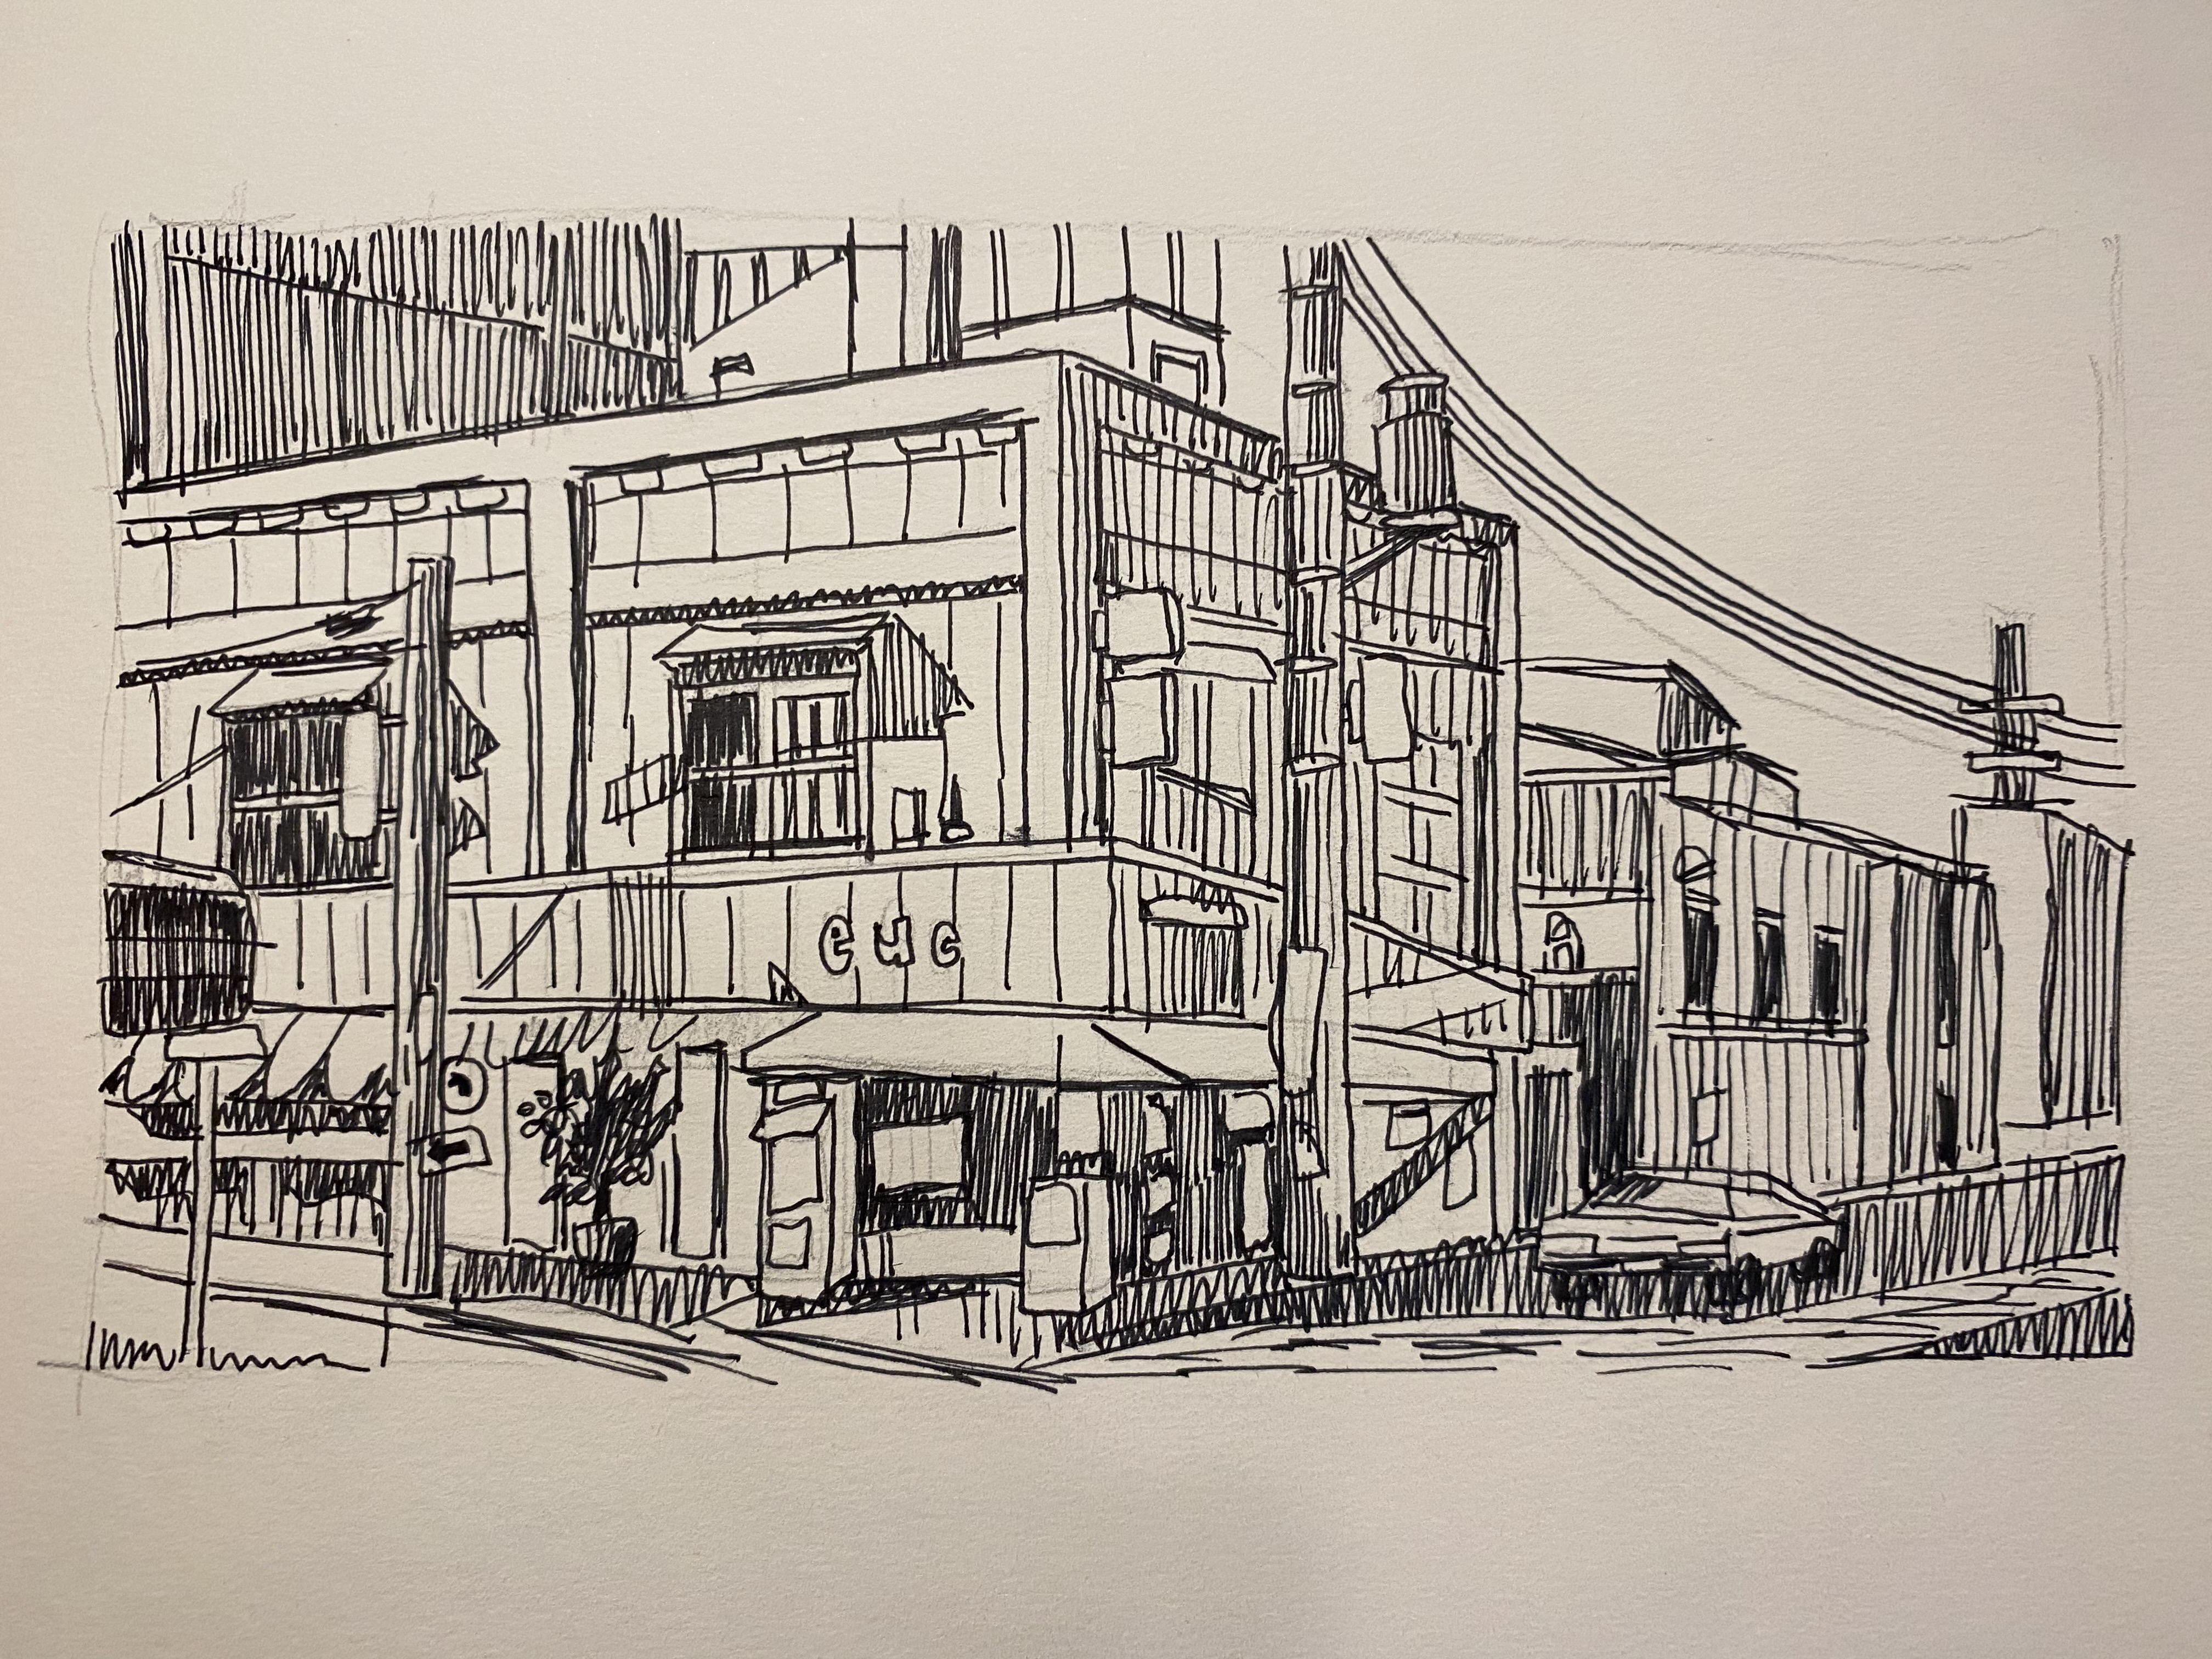 Urban Sketching in Pen & Ink